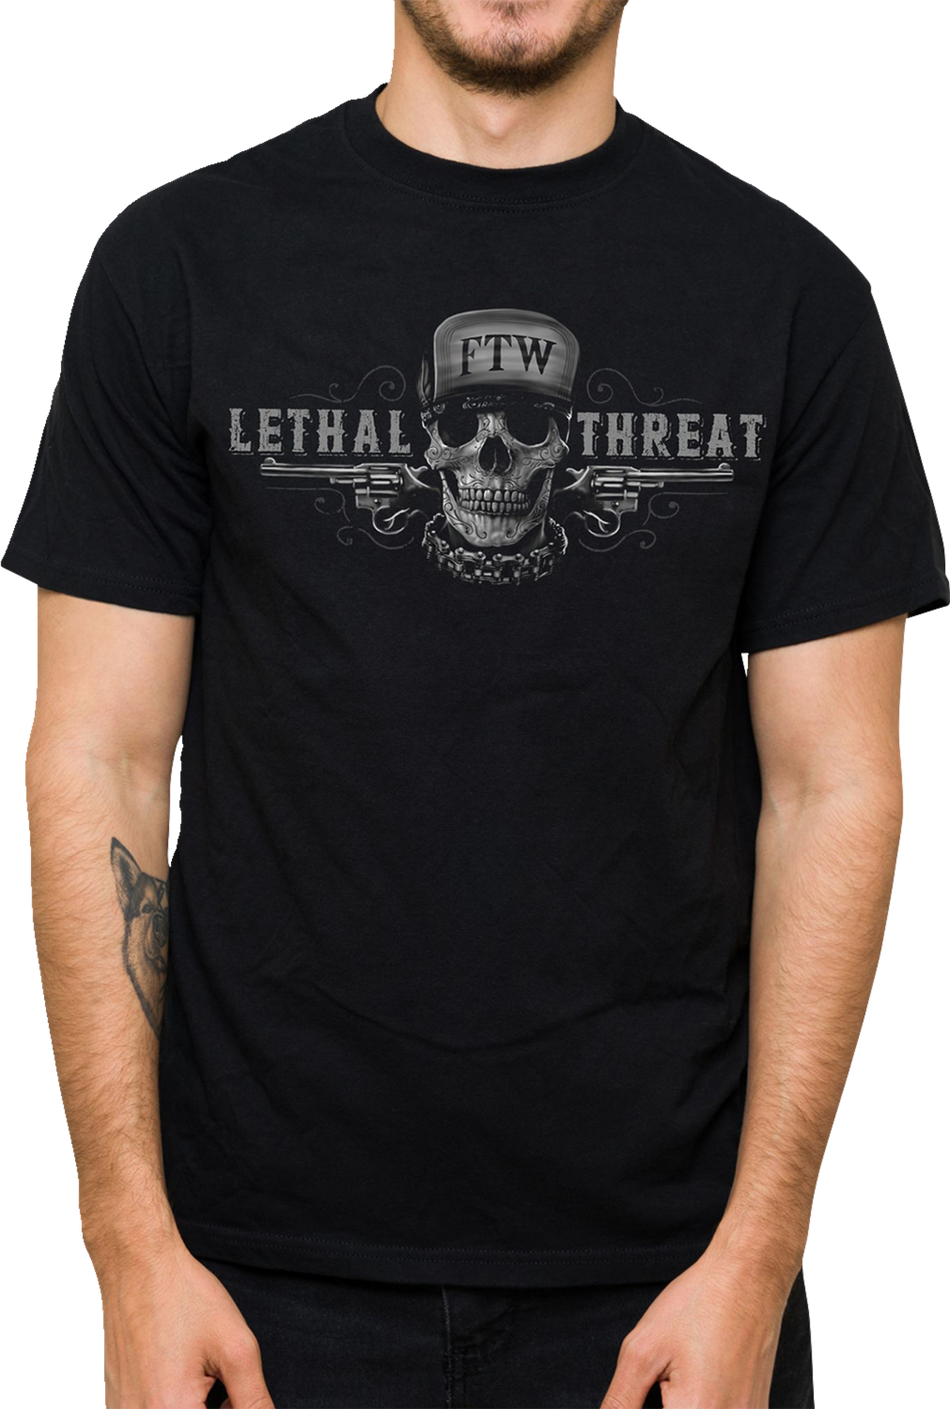 LETHAL THREAT Friend or Foe T-Shirt - Black - 5XL LT20904-5XL